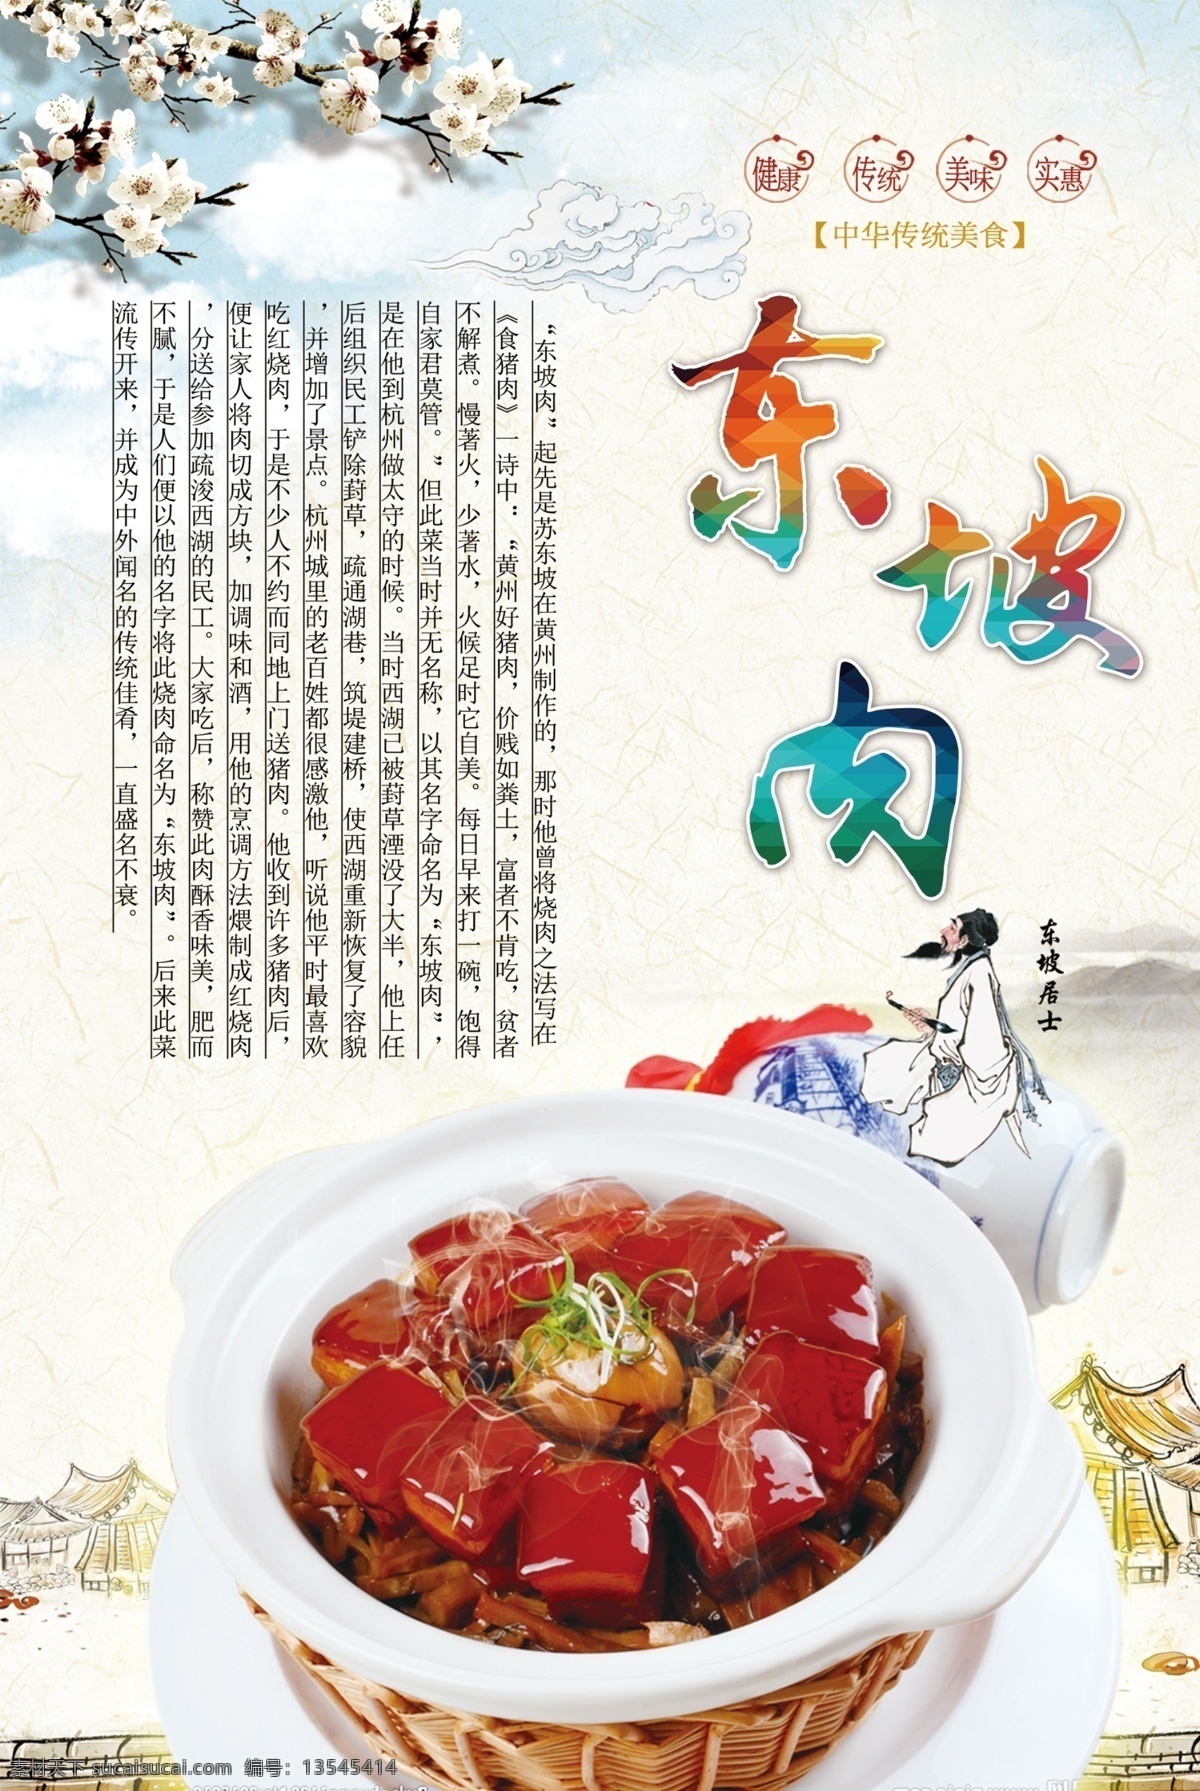 文化宣传海报 菜单 菜品宣传单 菜谱 创意海报 东坡肉 又来 典故 苏轼